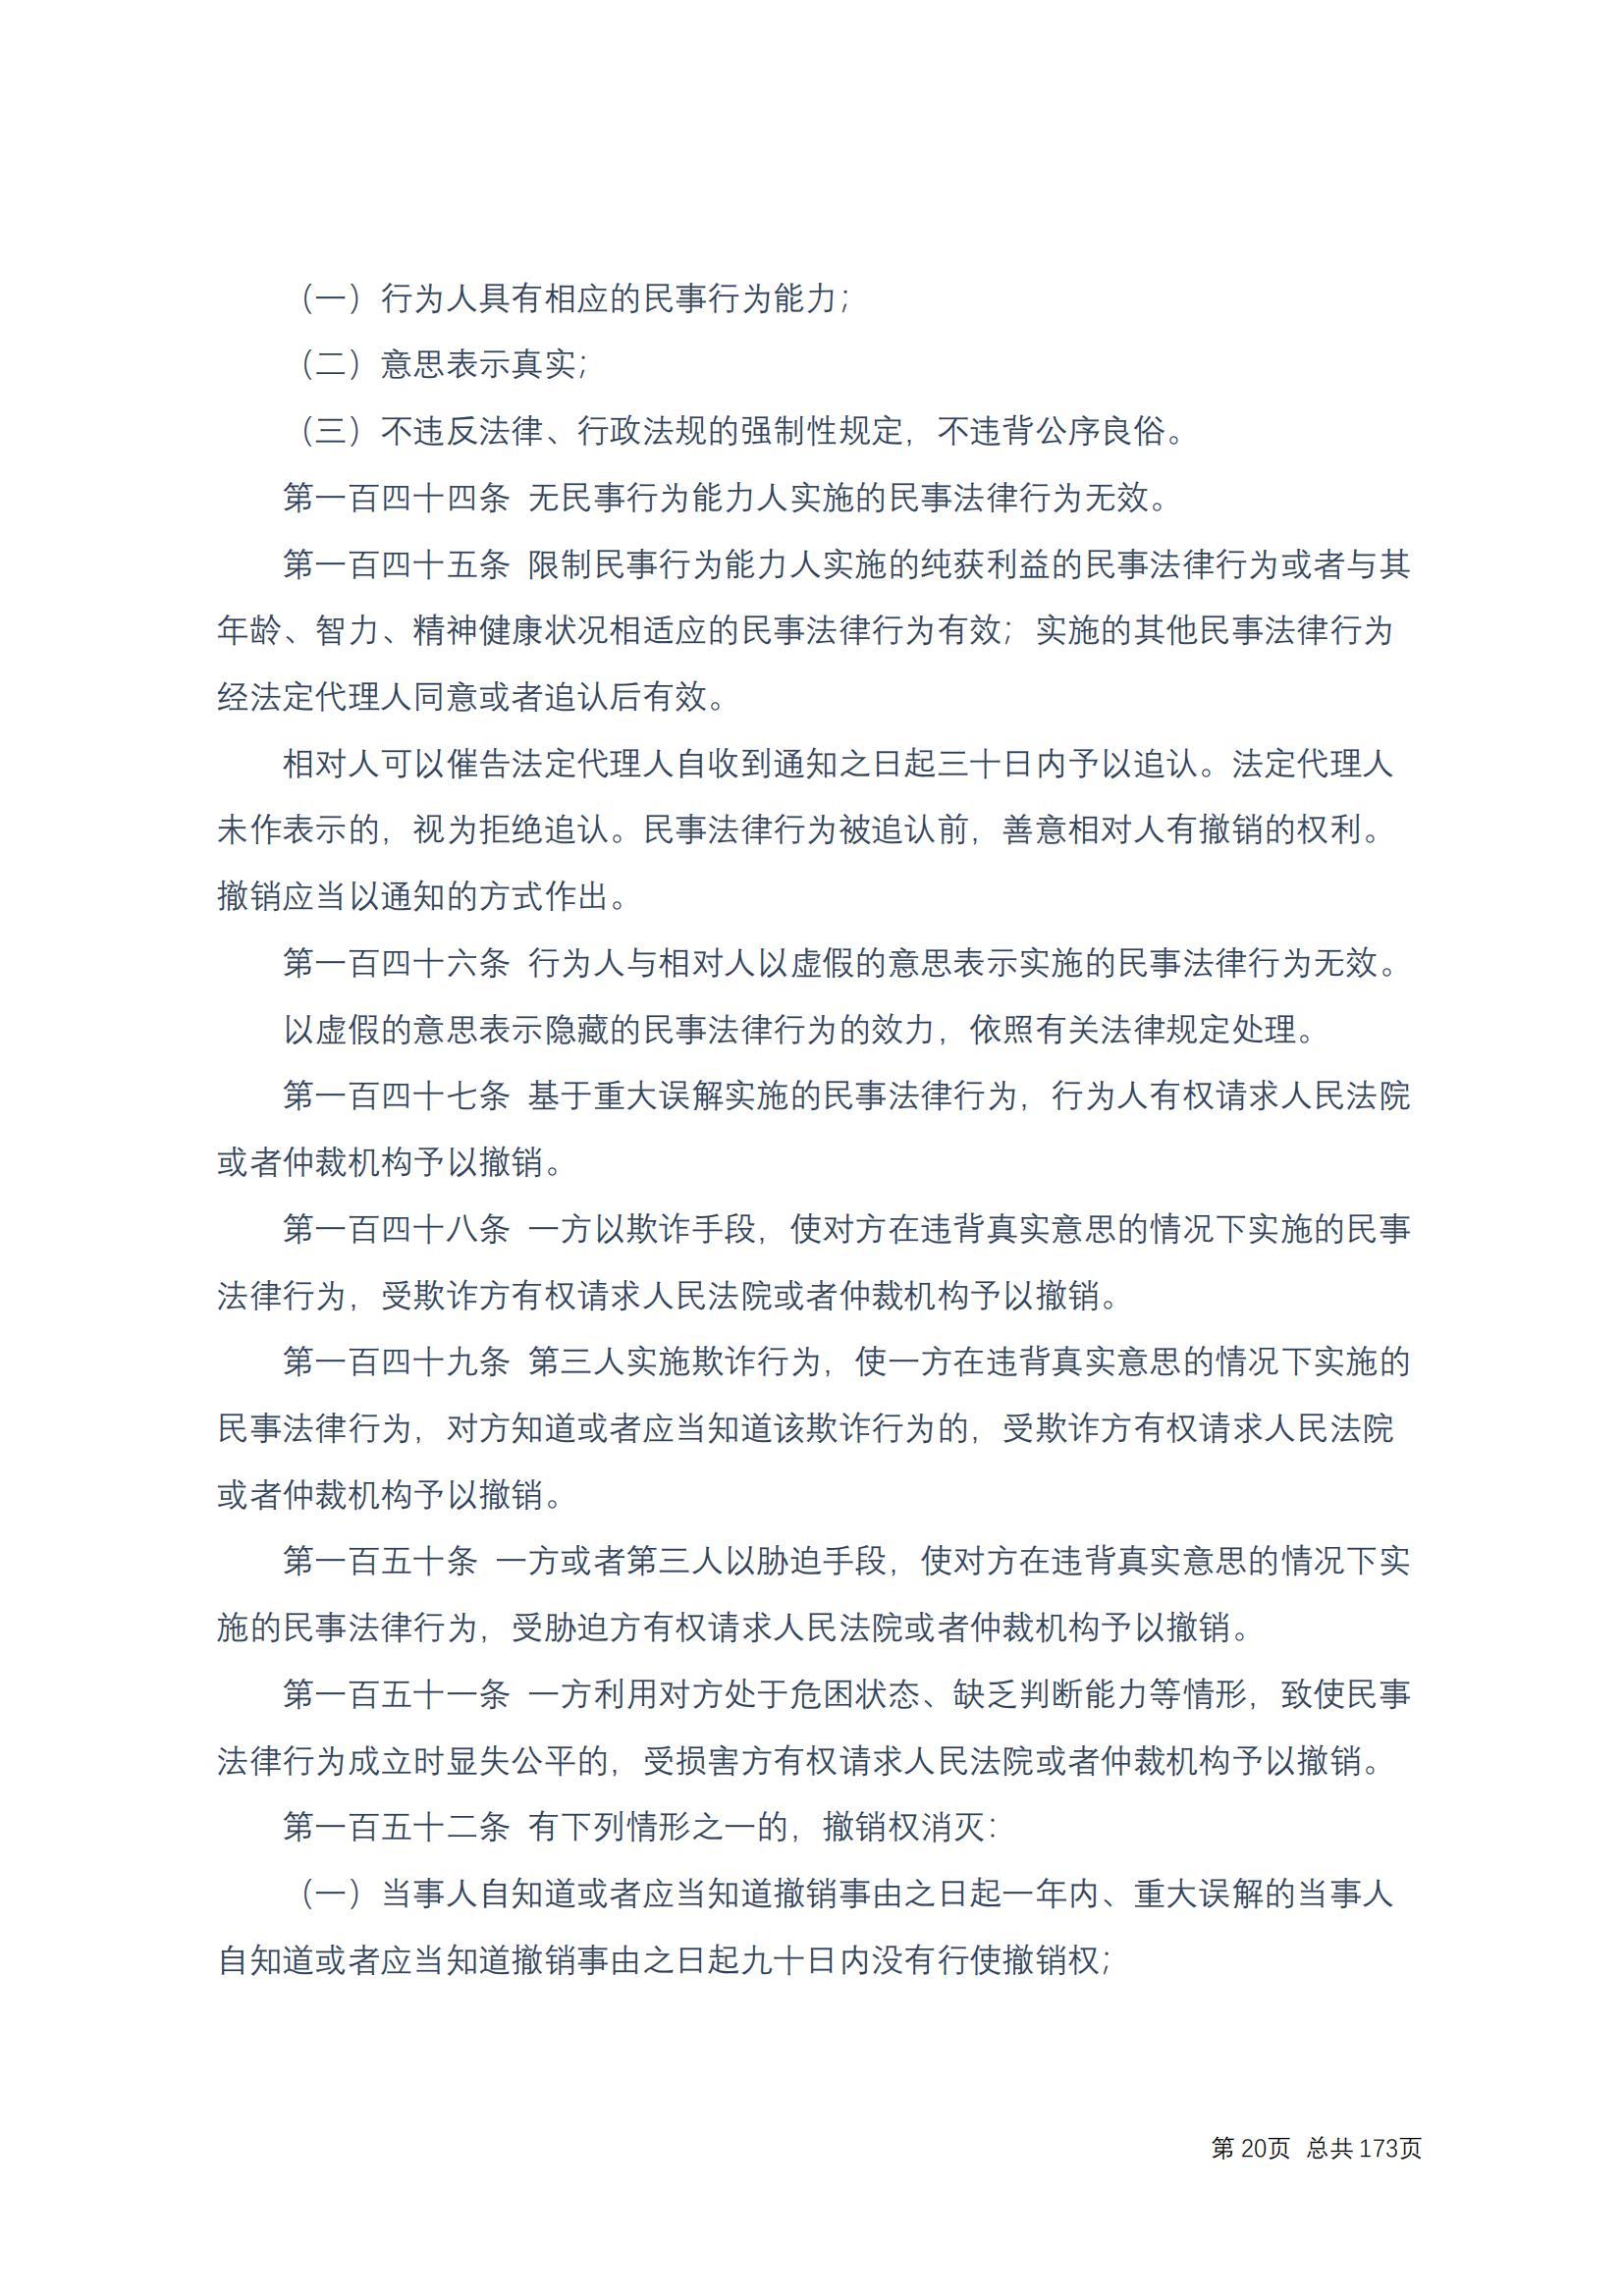 中华人民共和国民法典 修改过_19